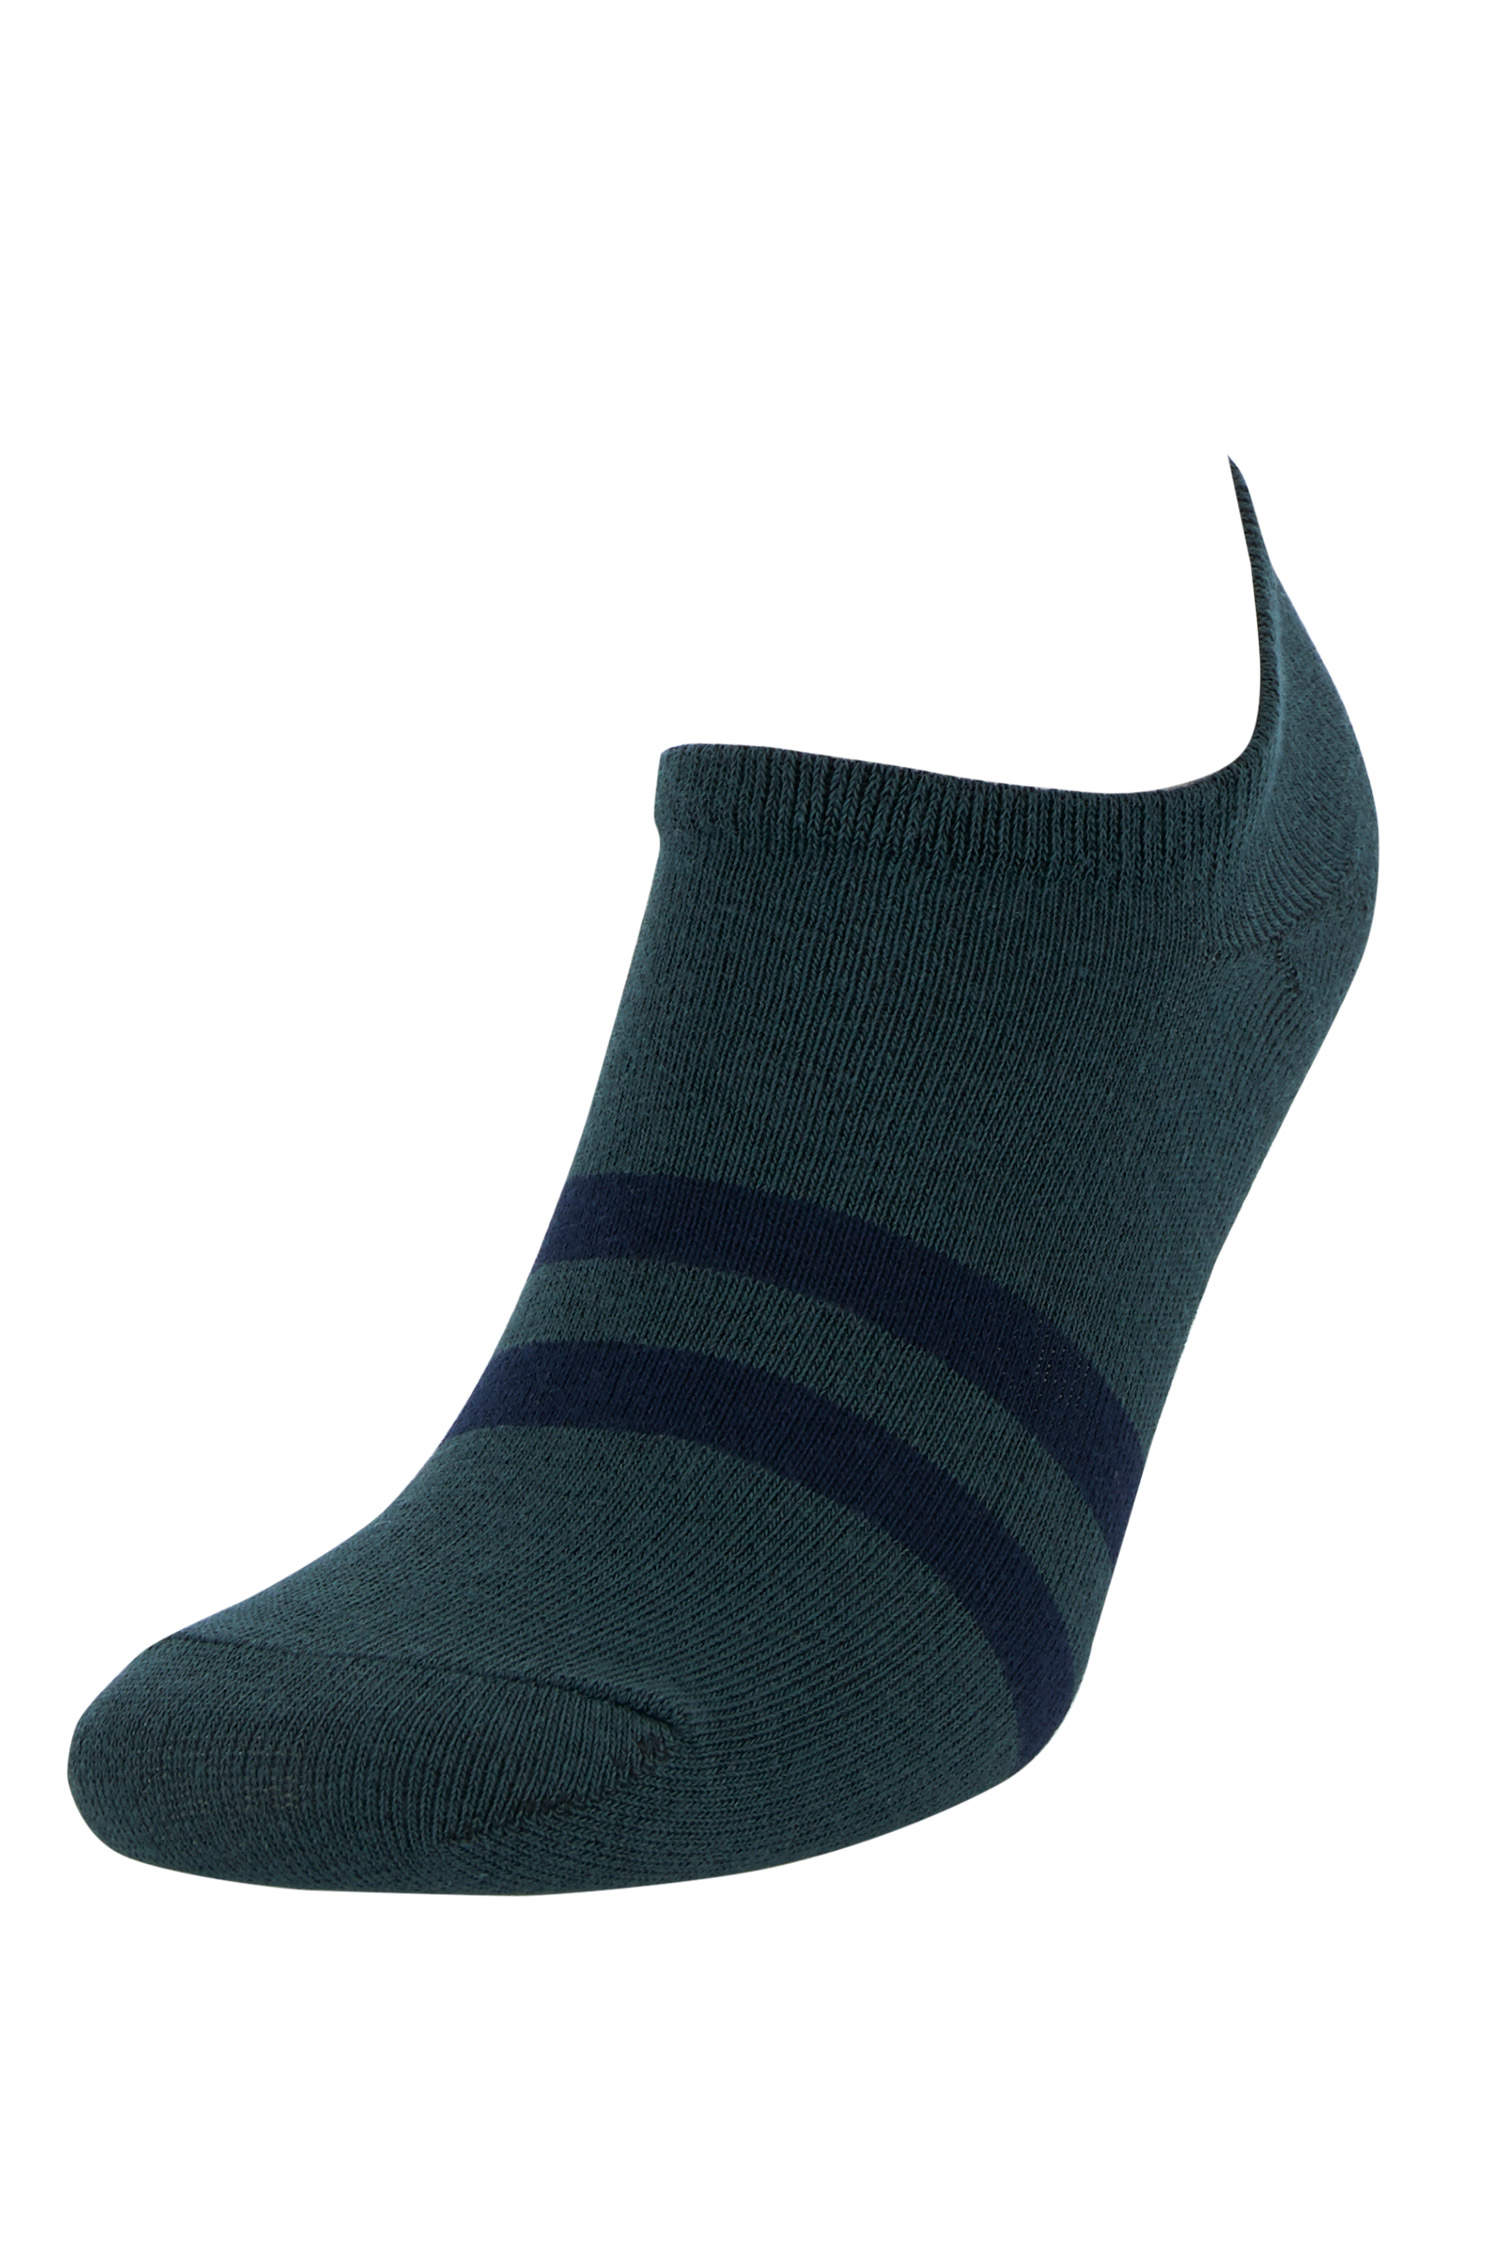 Defacto Renk Bloklu 5'li Patik Çorap. 5